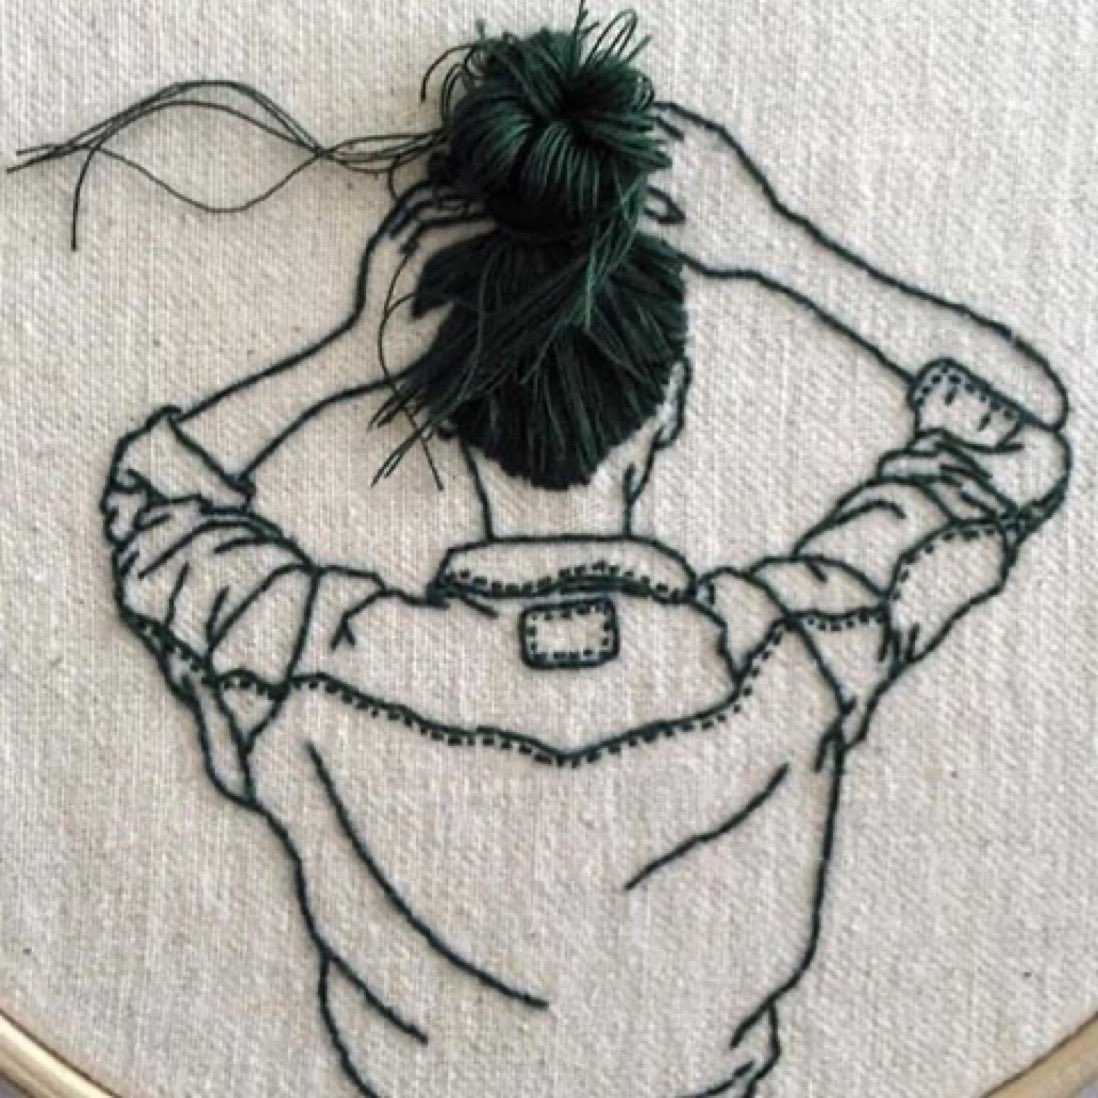 Embroidered Art 

#EmbroideredArt #StitchCraft #FiberArt #HandEmbroidery #EmbroideryHoops
#NeedleWork #StitchersOfInstagram #CraftsOfInstagram #ThreadArt #ModernEmbroidery
#EmbroideryLove #ArtisanCrafts #DIYCrafts #EmbroideryInstaguild #StitchWitchery
#CraftyFingers